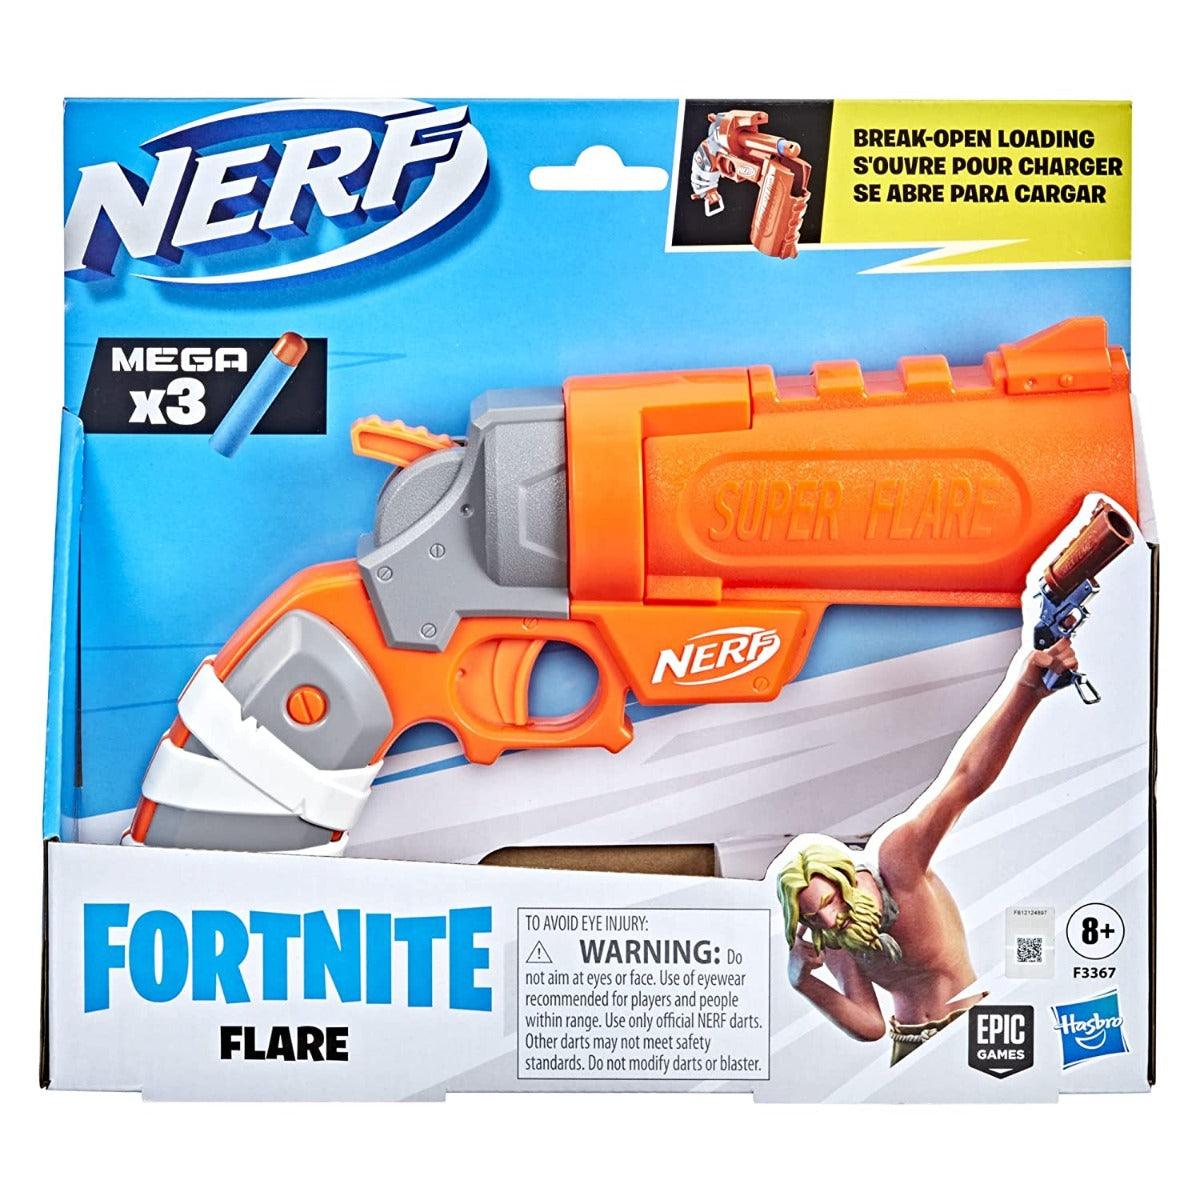 Nerf Fortnite Flare Dart Blaster, Break-Open Dart Loading, Includes 3 Mega Dart